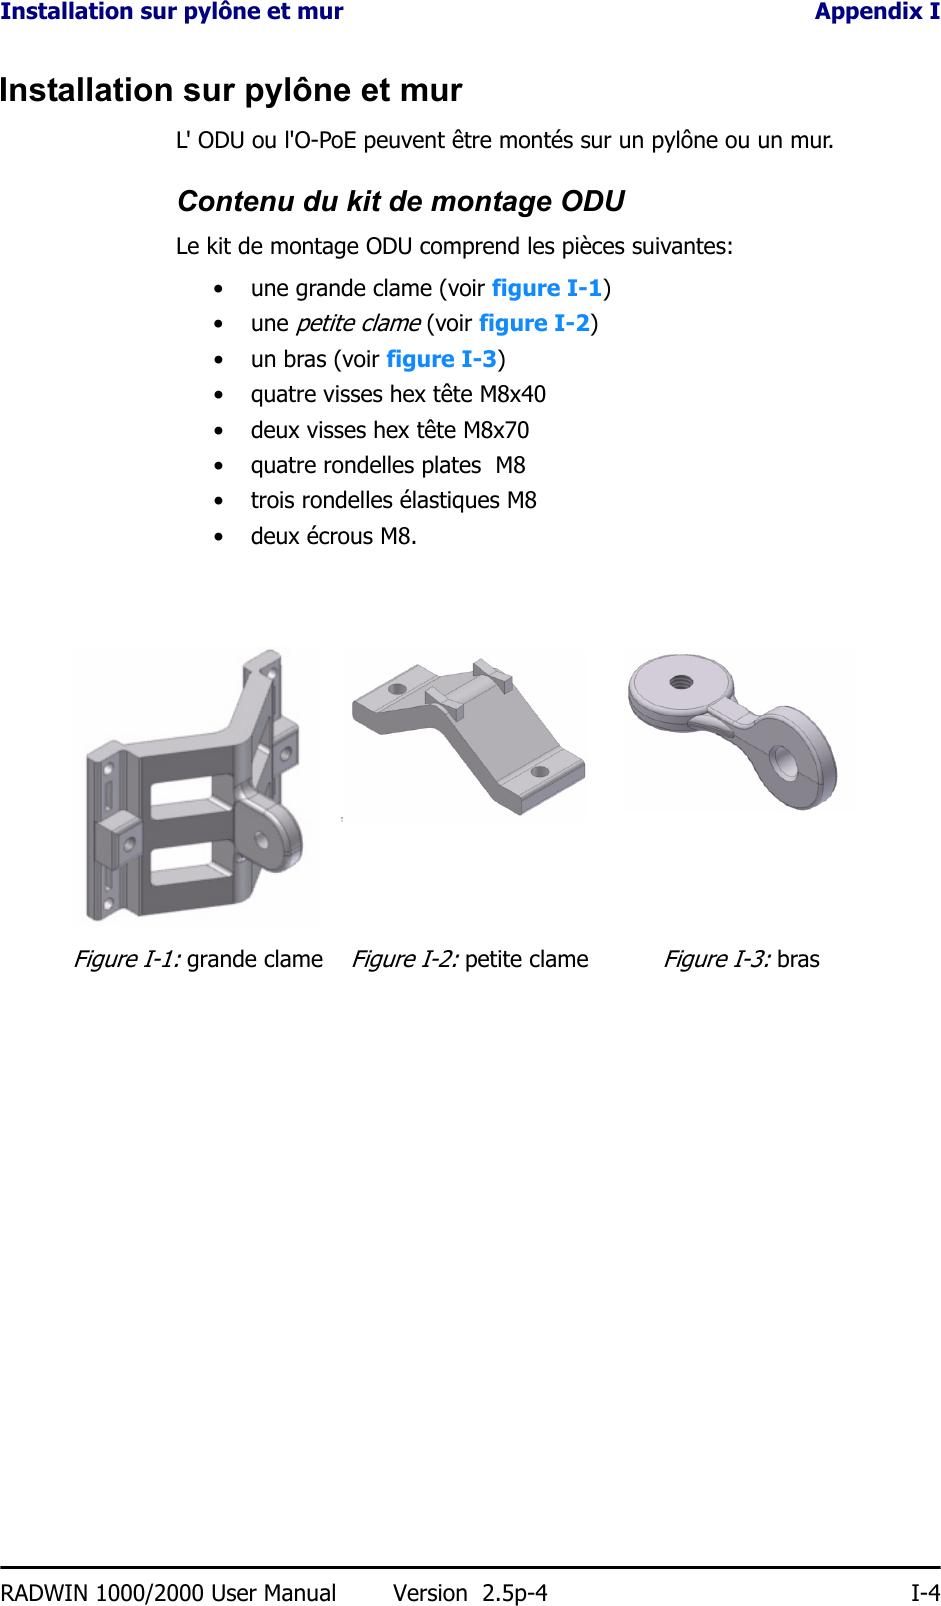 Installation sur pylône et mur Appendix IRADWIN 1000/2000 User Manual Version  2.5p-4 I-4Installation sur pylône et murL&apos; ODU ou l&apos;O-PoE peuvent être montés sur un pylône ou un mur.Contenu du kit de montage ODULe kit de montage ODU comprend les pièces suivantes:• une grande clame (voir figure I-1)• une petite clame (voir figure I-2)• un bras (voir figure I-3)• quatre visses hex tête M8x40• deux visses hex tête M8x70• quatre rondelles plates  M8• trois rondelles élastiques M8• deux écrous M8.Figure I-1: grande clameFigure I-2: petite clameFigure I-3: bras